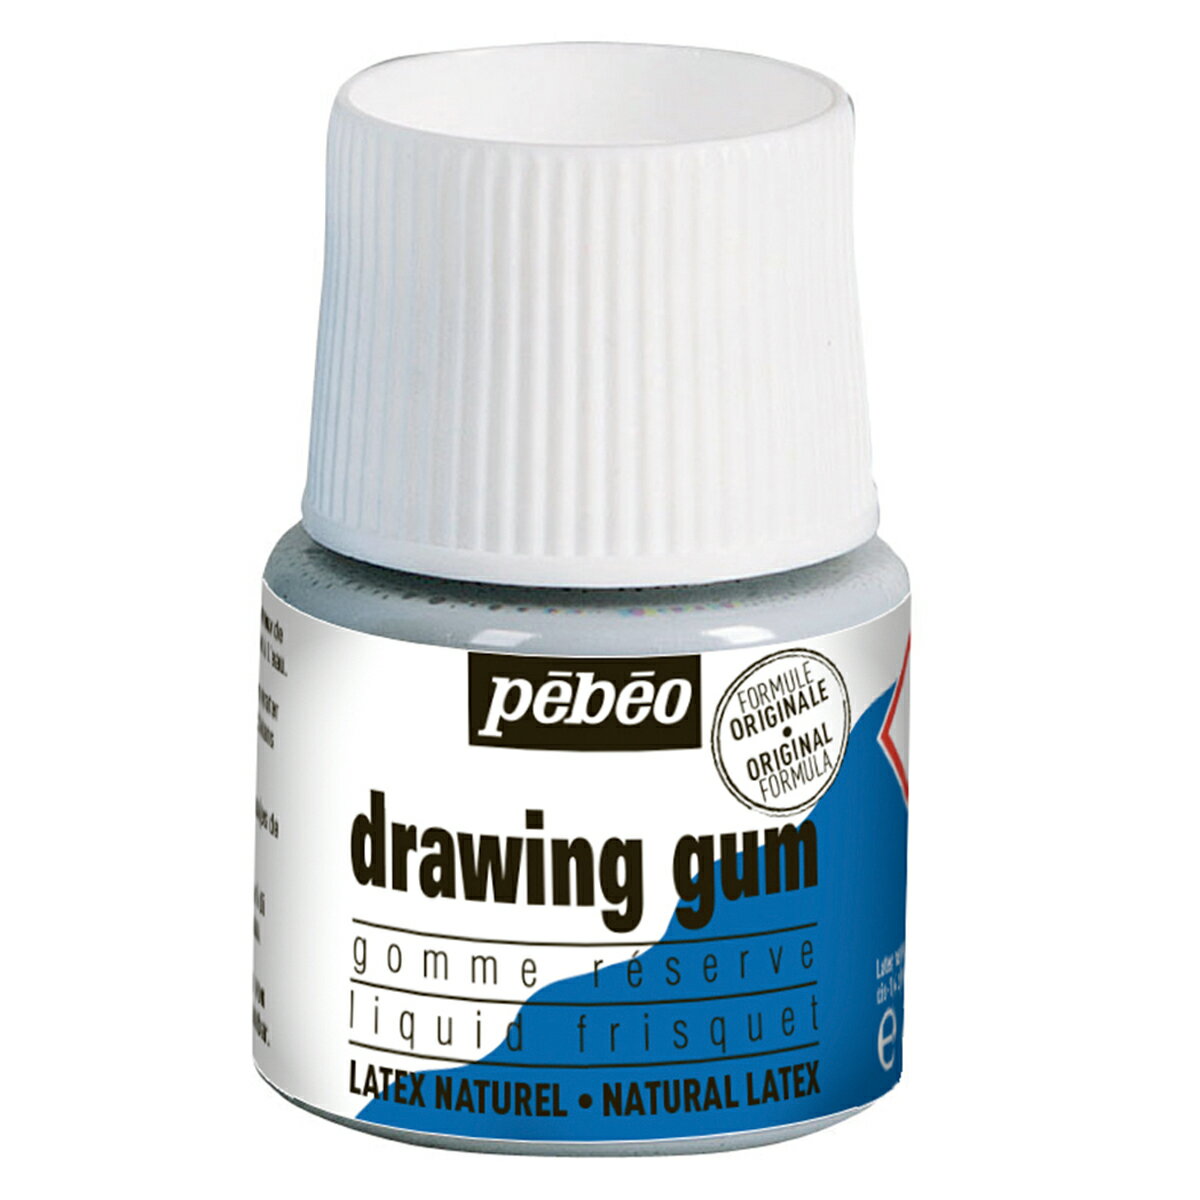 45mL ボトル入り 【使い方】 (1)マスキングしたい箇所に筆でドローイングガムを塗ります。 (2)約10分程度自然乾燥後、絵の具・インクを塗ります。 (3)乾燥したらドローイングガムを指や消しゴム等ではがします。